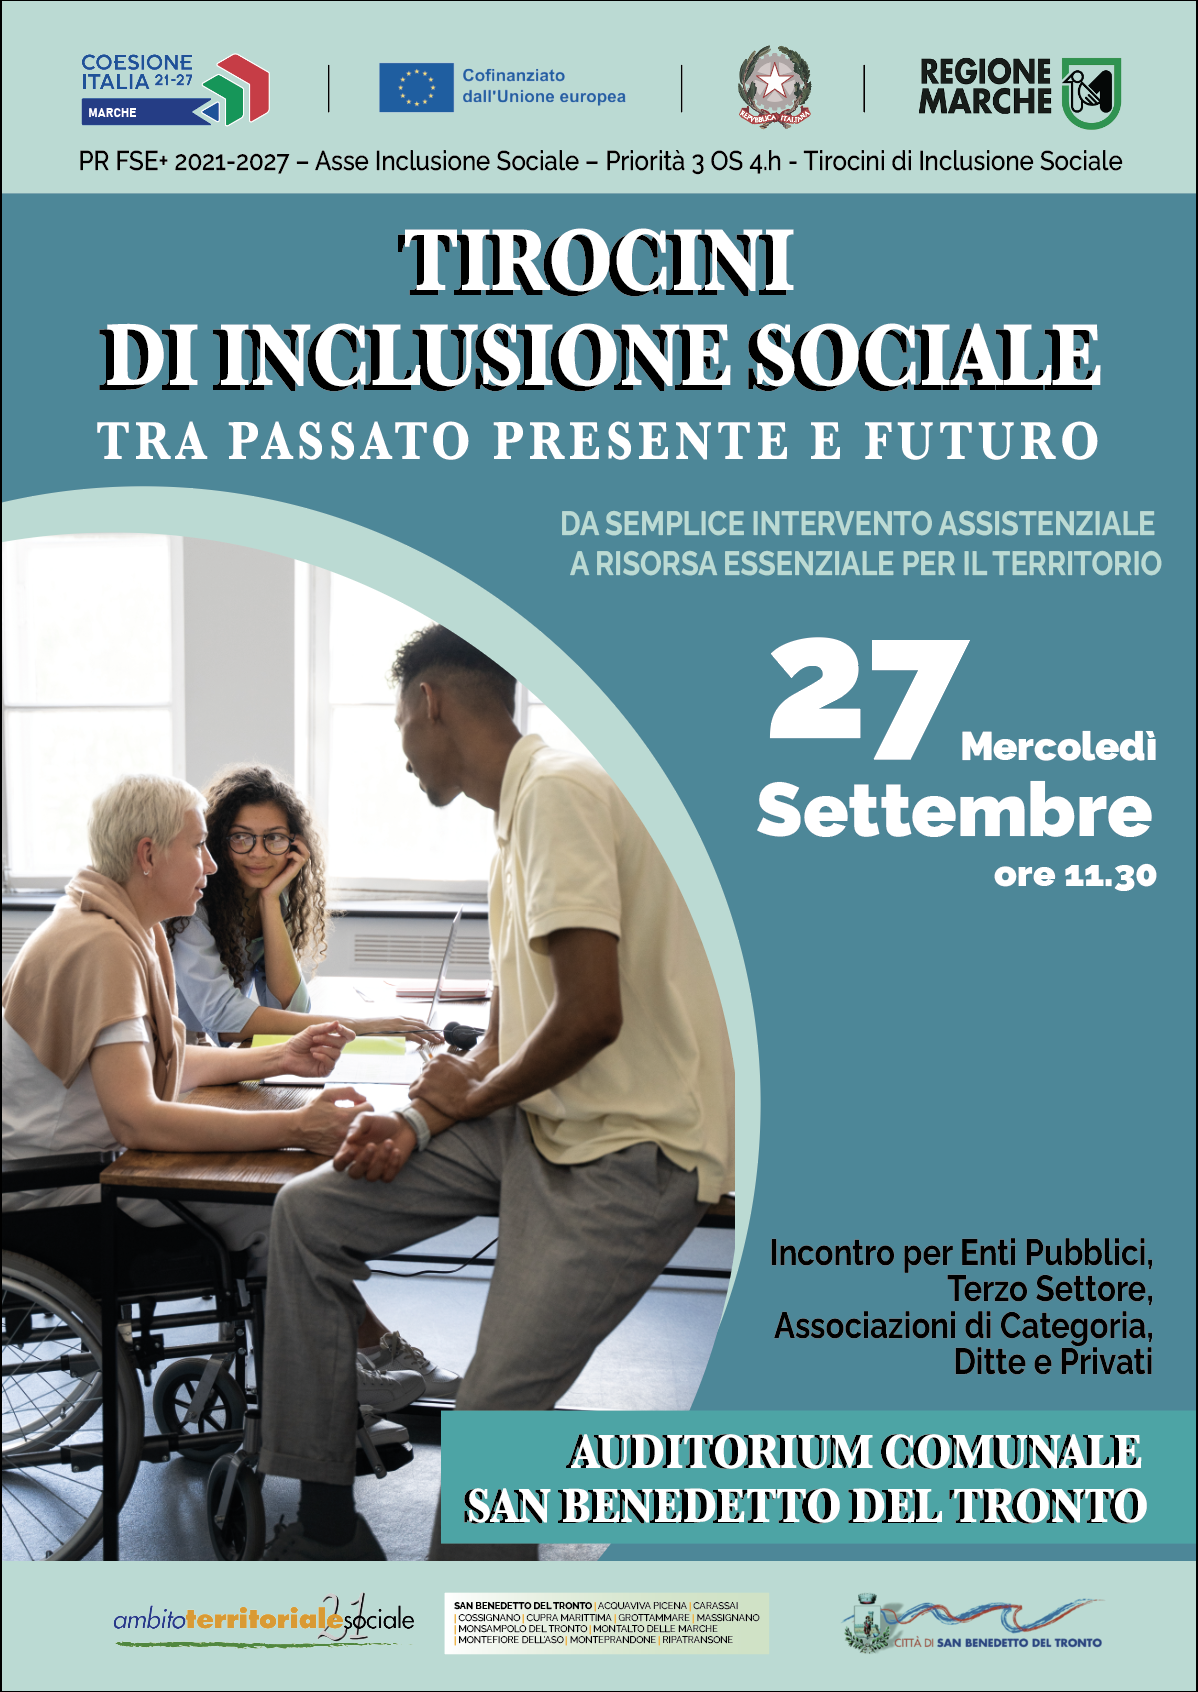 "TIROCINI DI INCLUSIONE SOCIALE" - TRA PASSATO PRESENTE E FUTURO